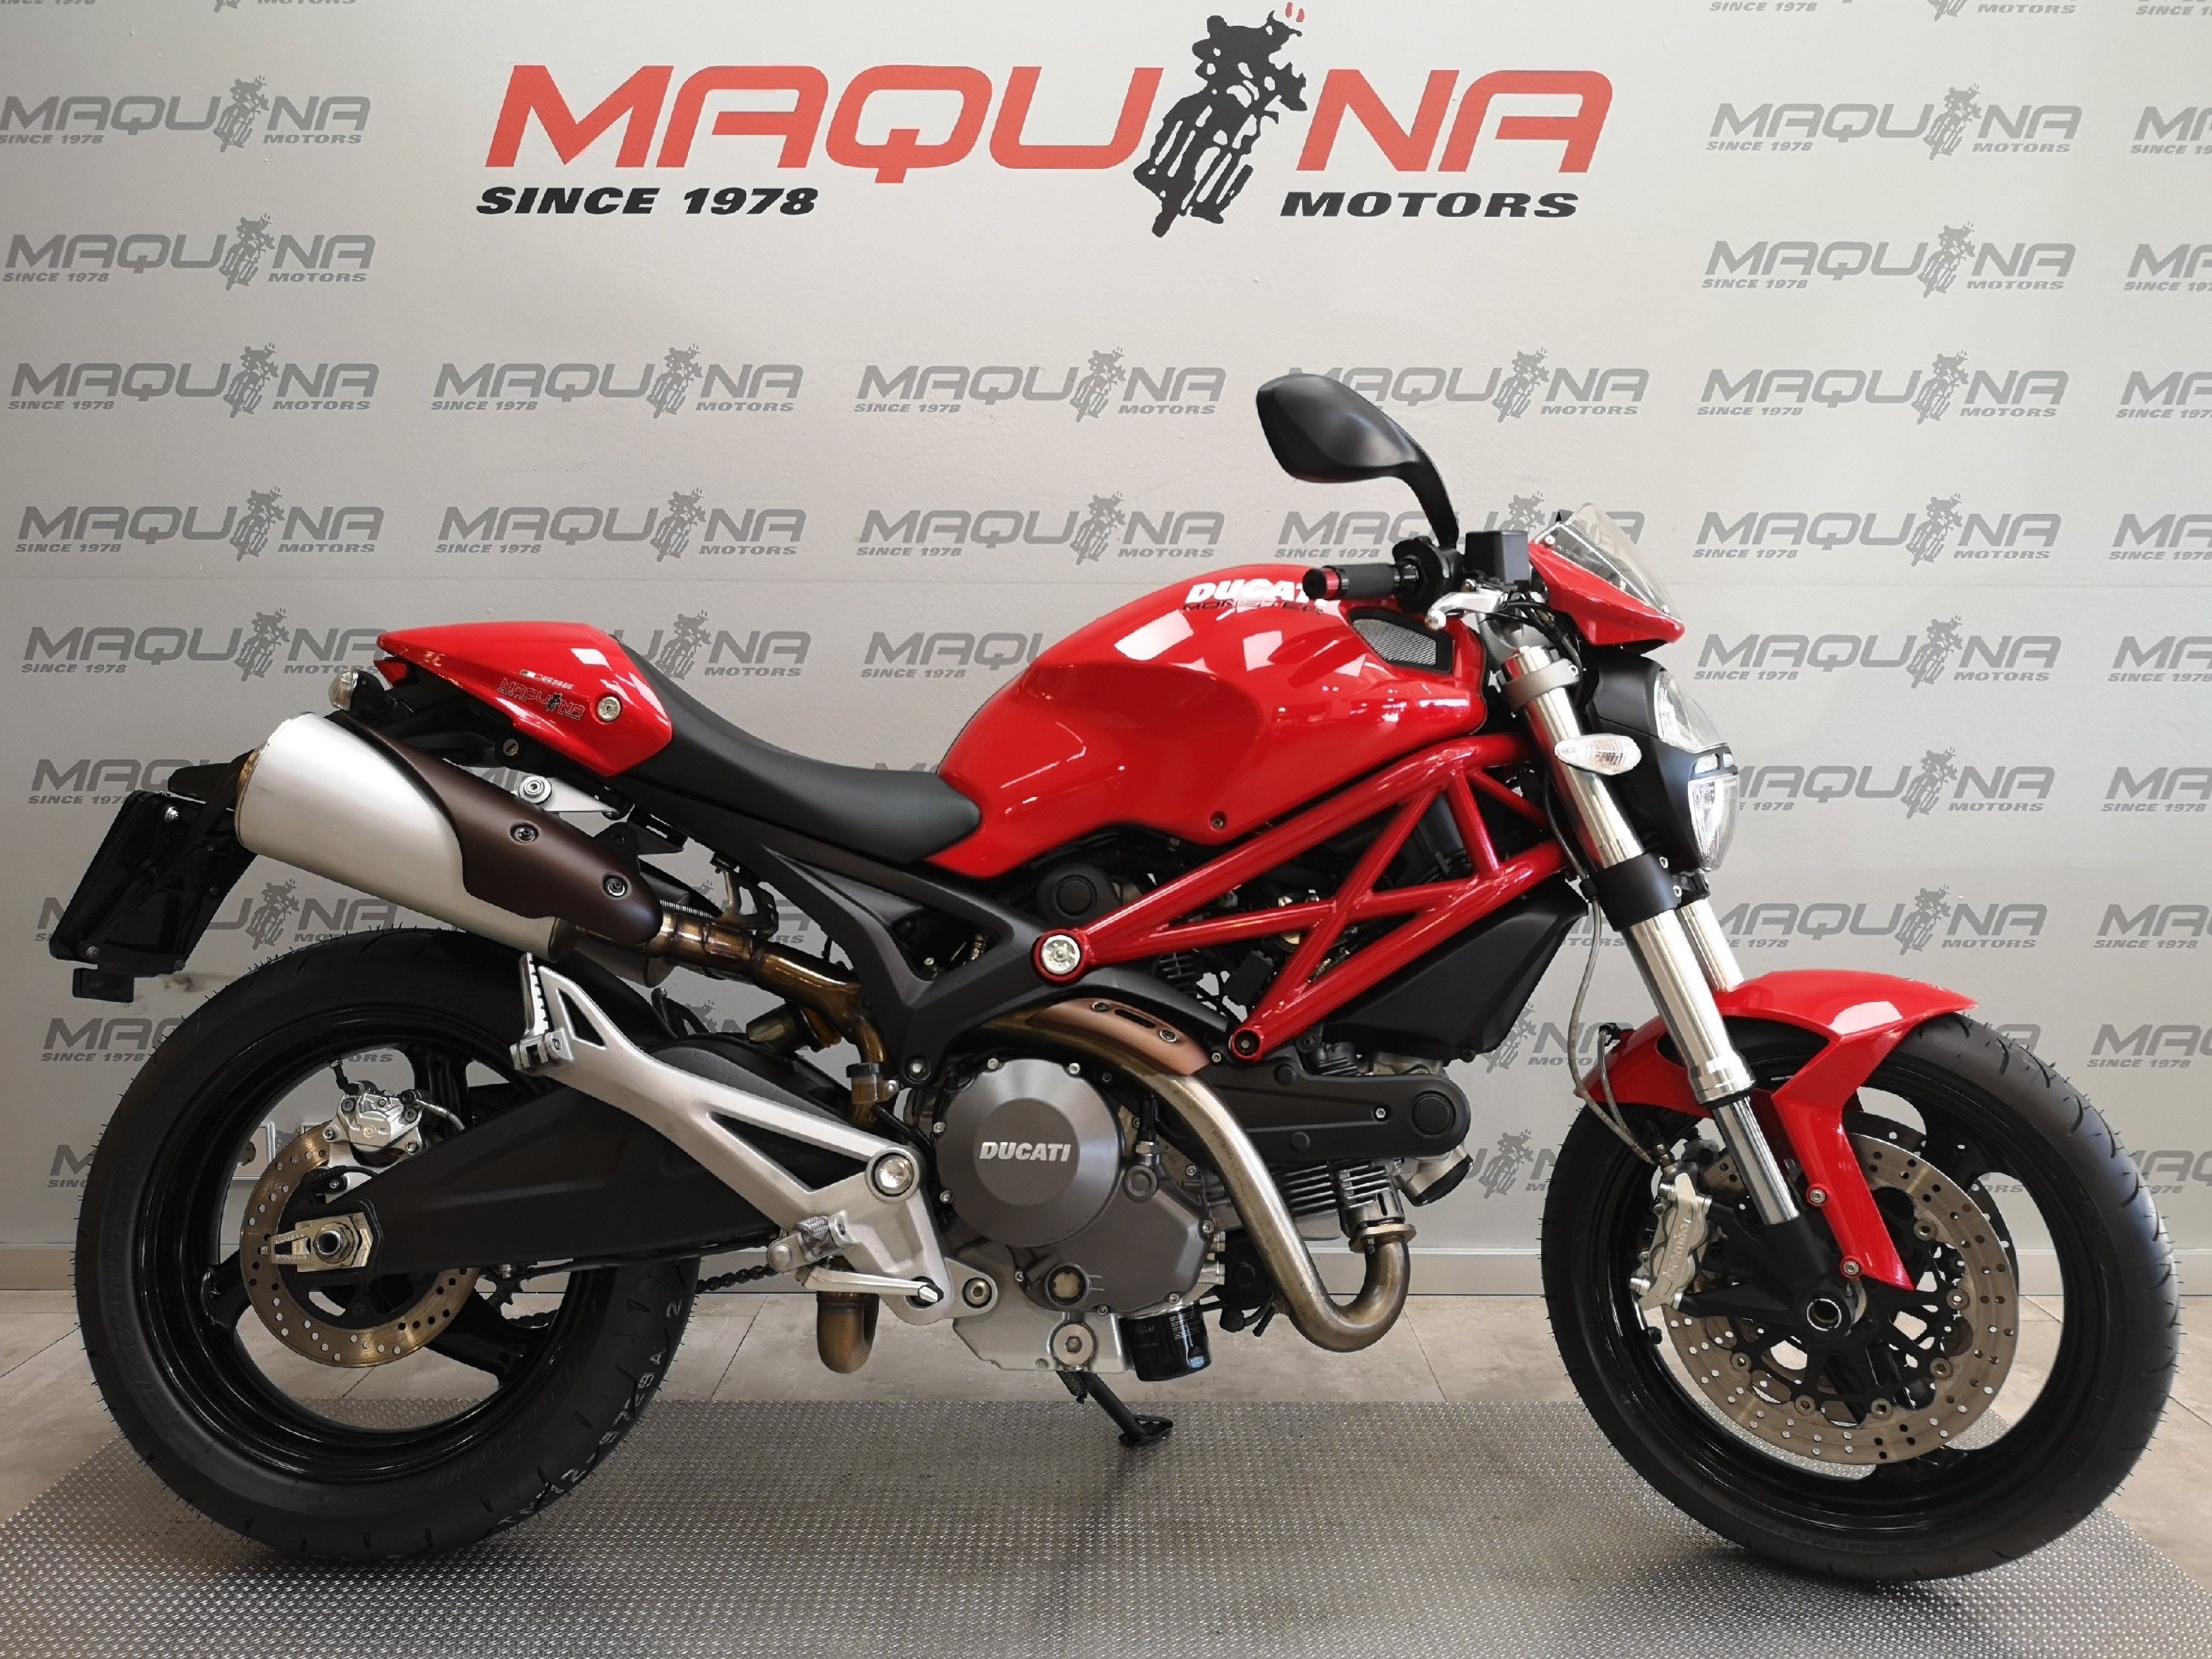 galope máximo juguete DUCATI MONSTER 696 – Maquina Motors motos ocasión